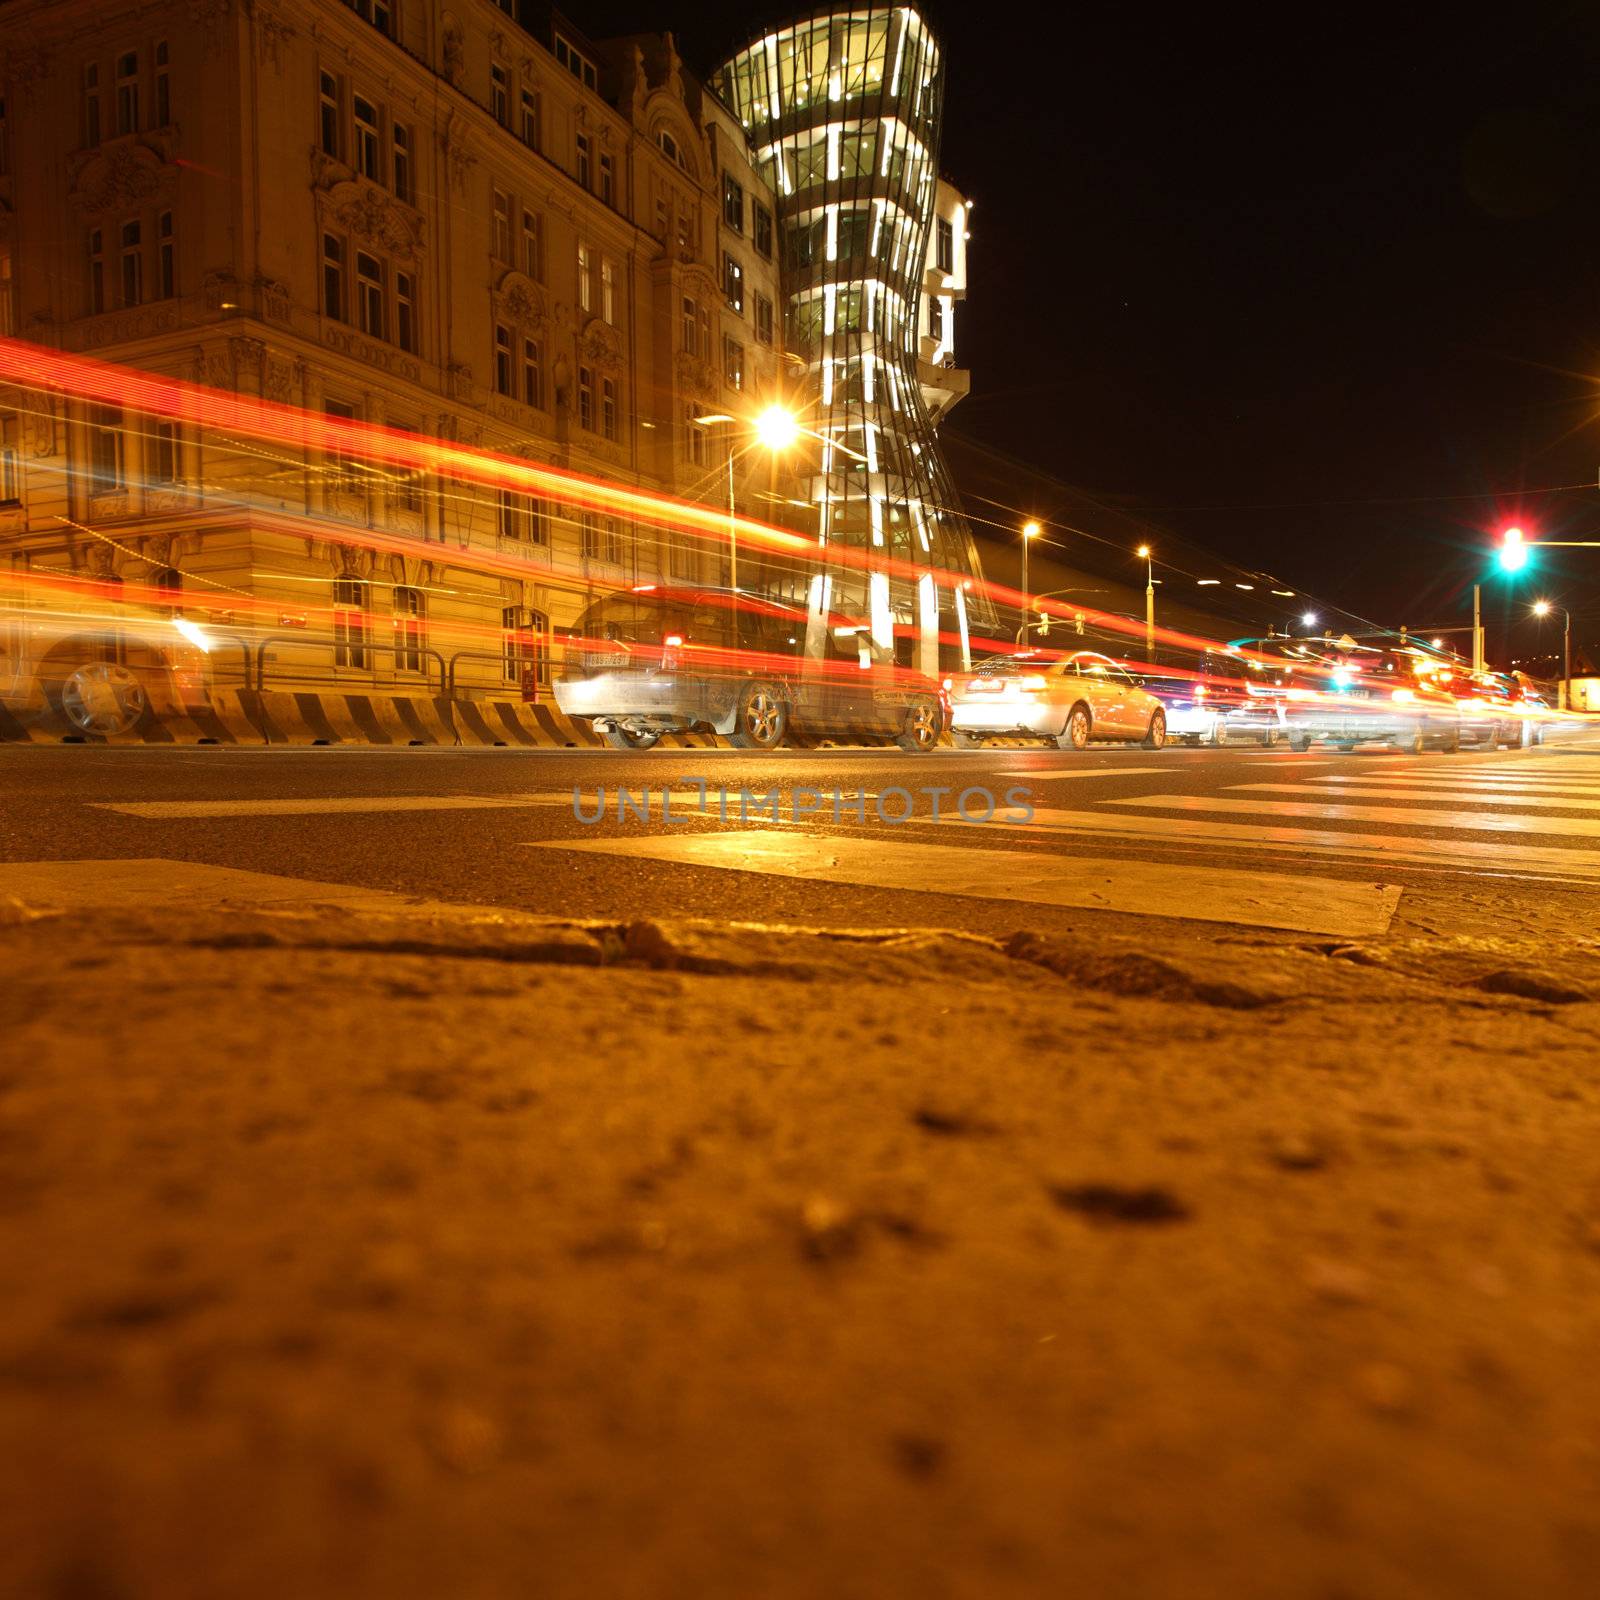 night city lights on street